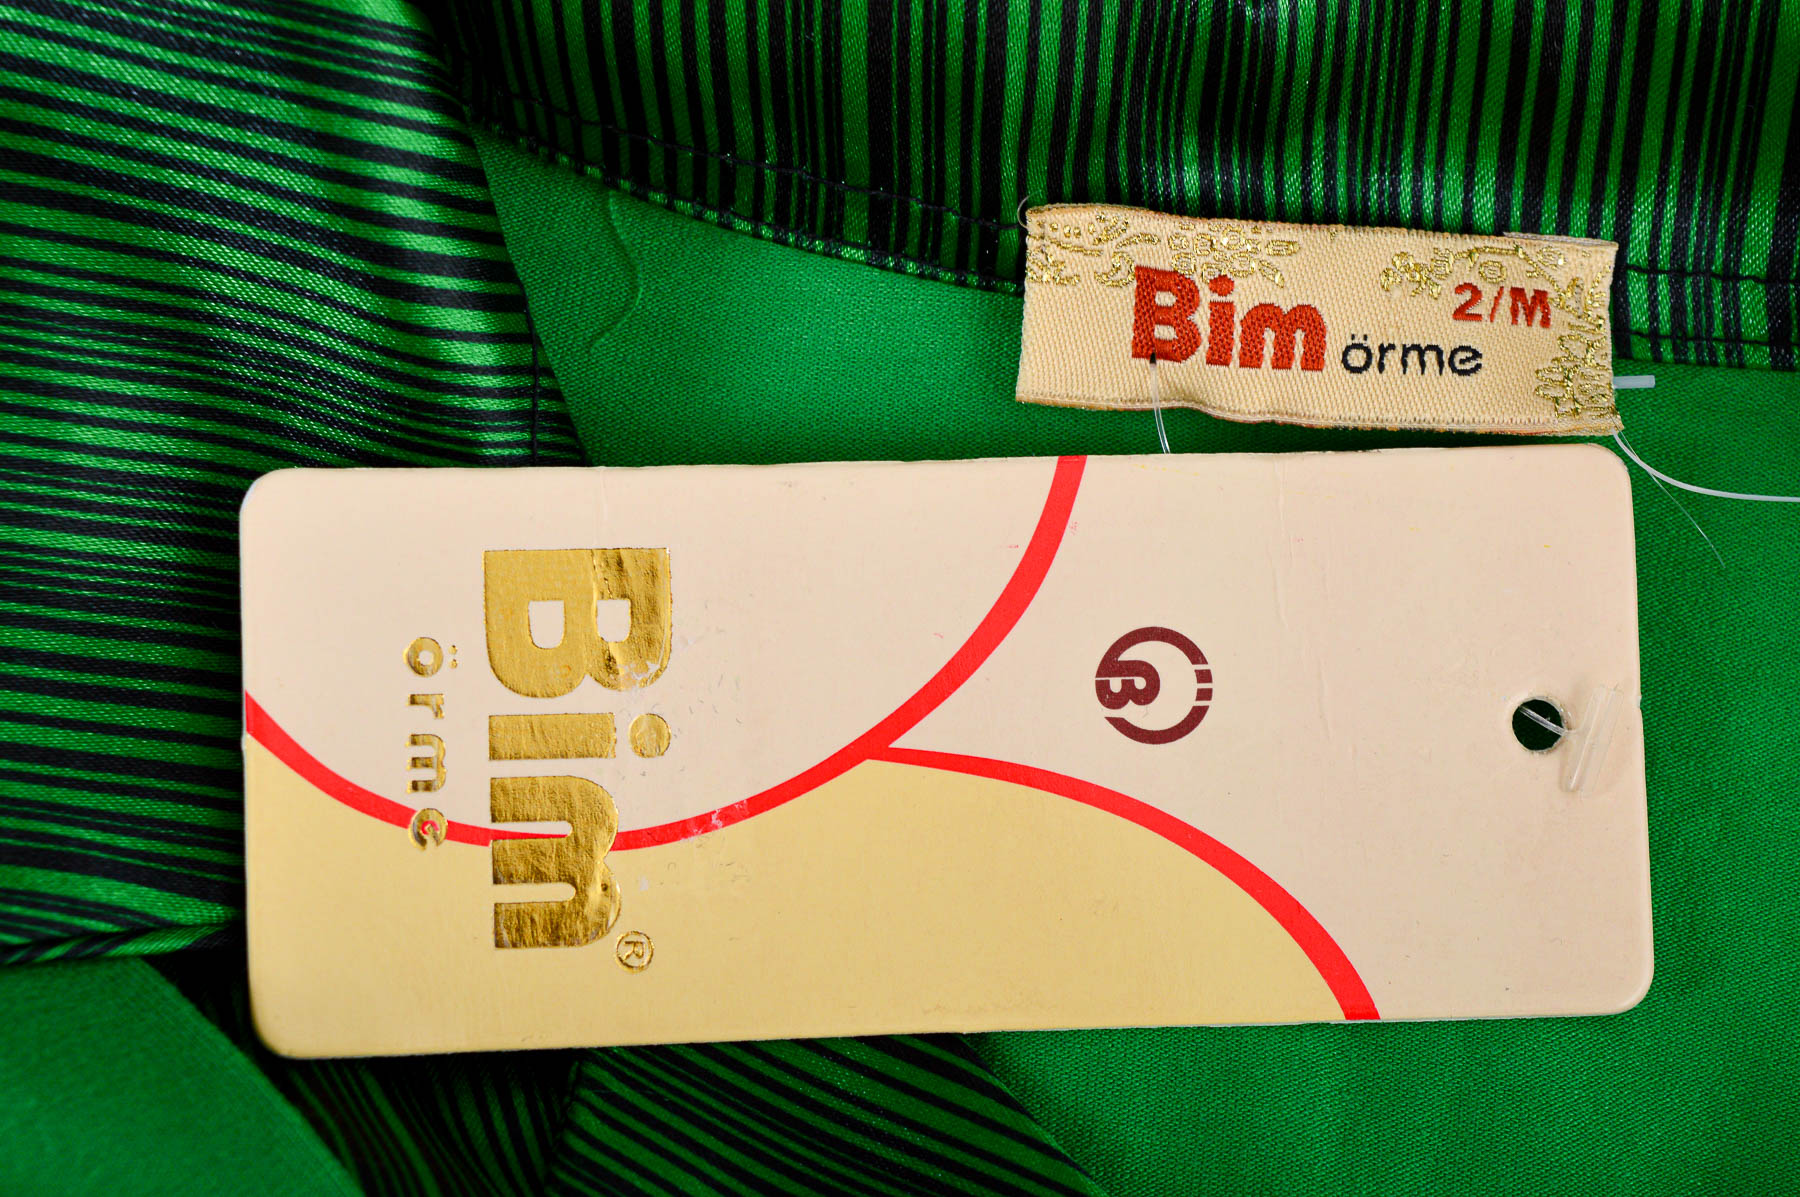 Γυναικεία μπλούζα - Bim orme - 2